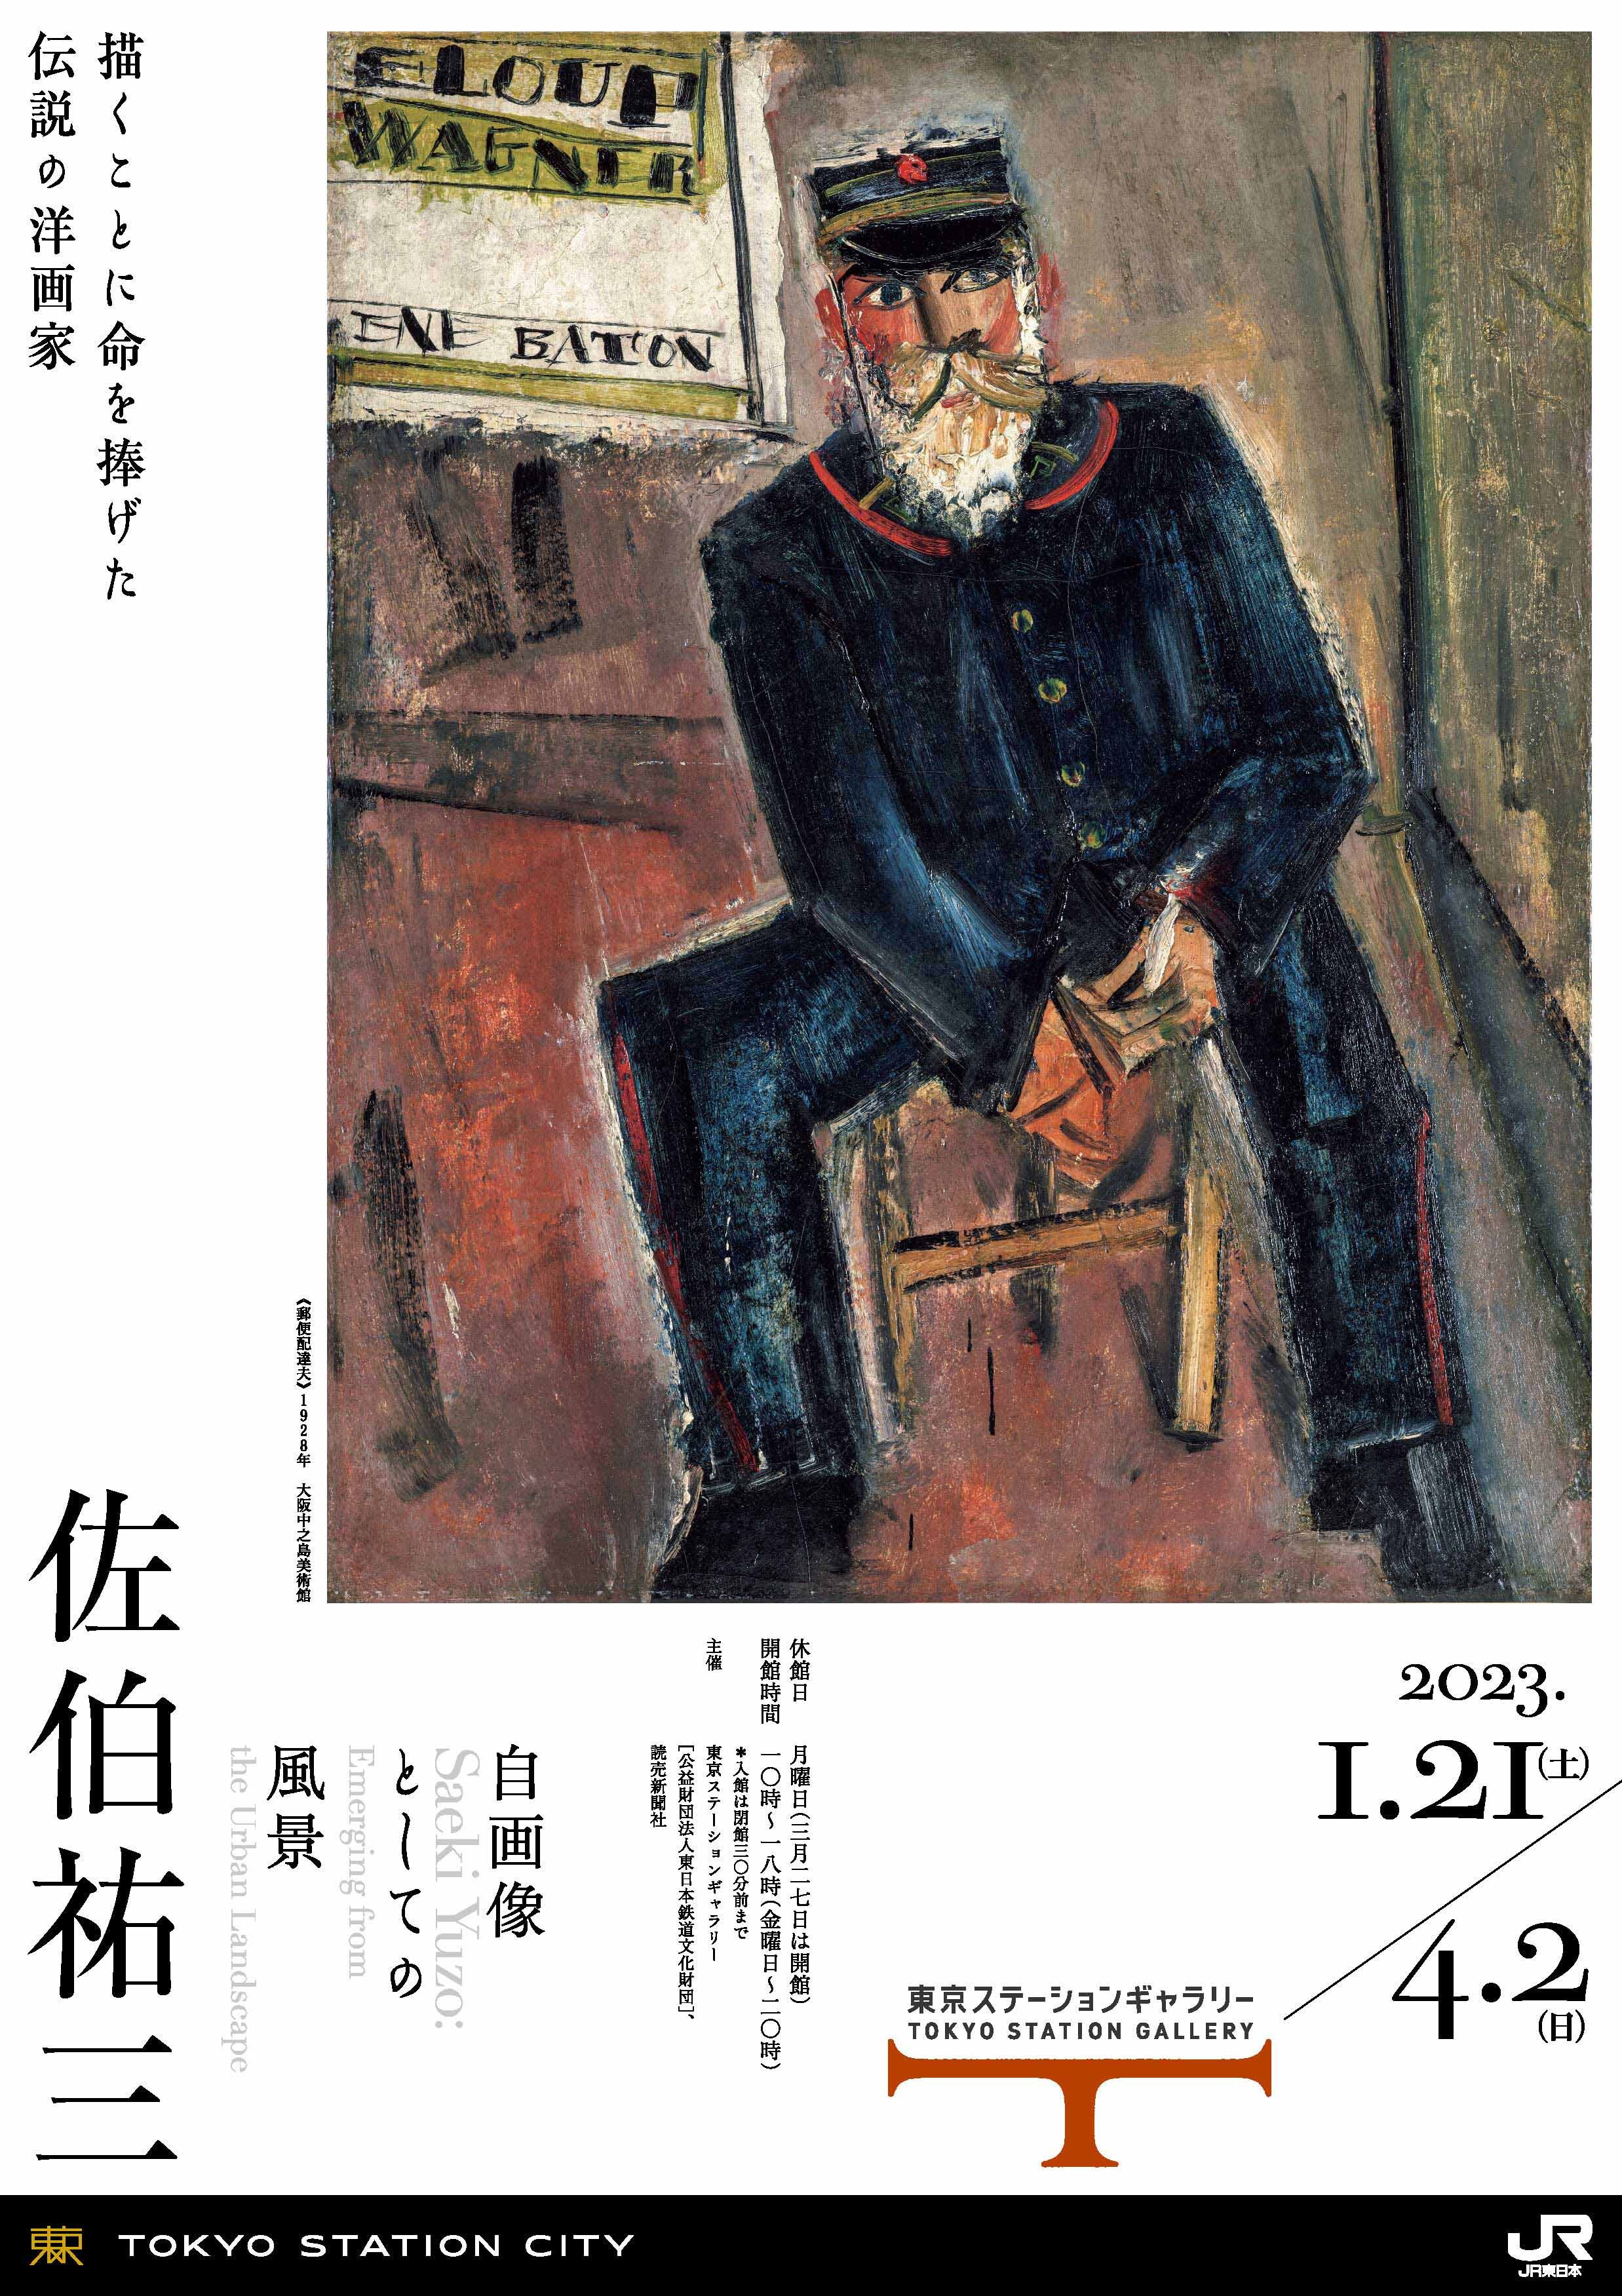 天才画家・佐伯祐三の本格的回顧展 東京ステーションギャラリーで開催